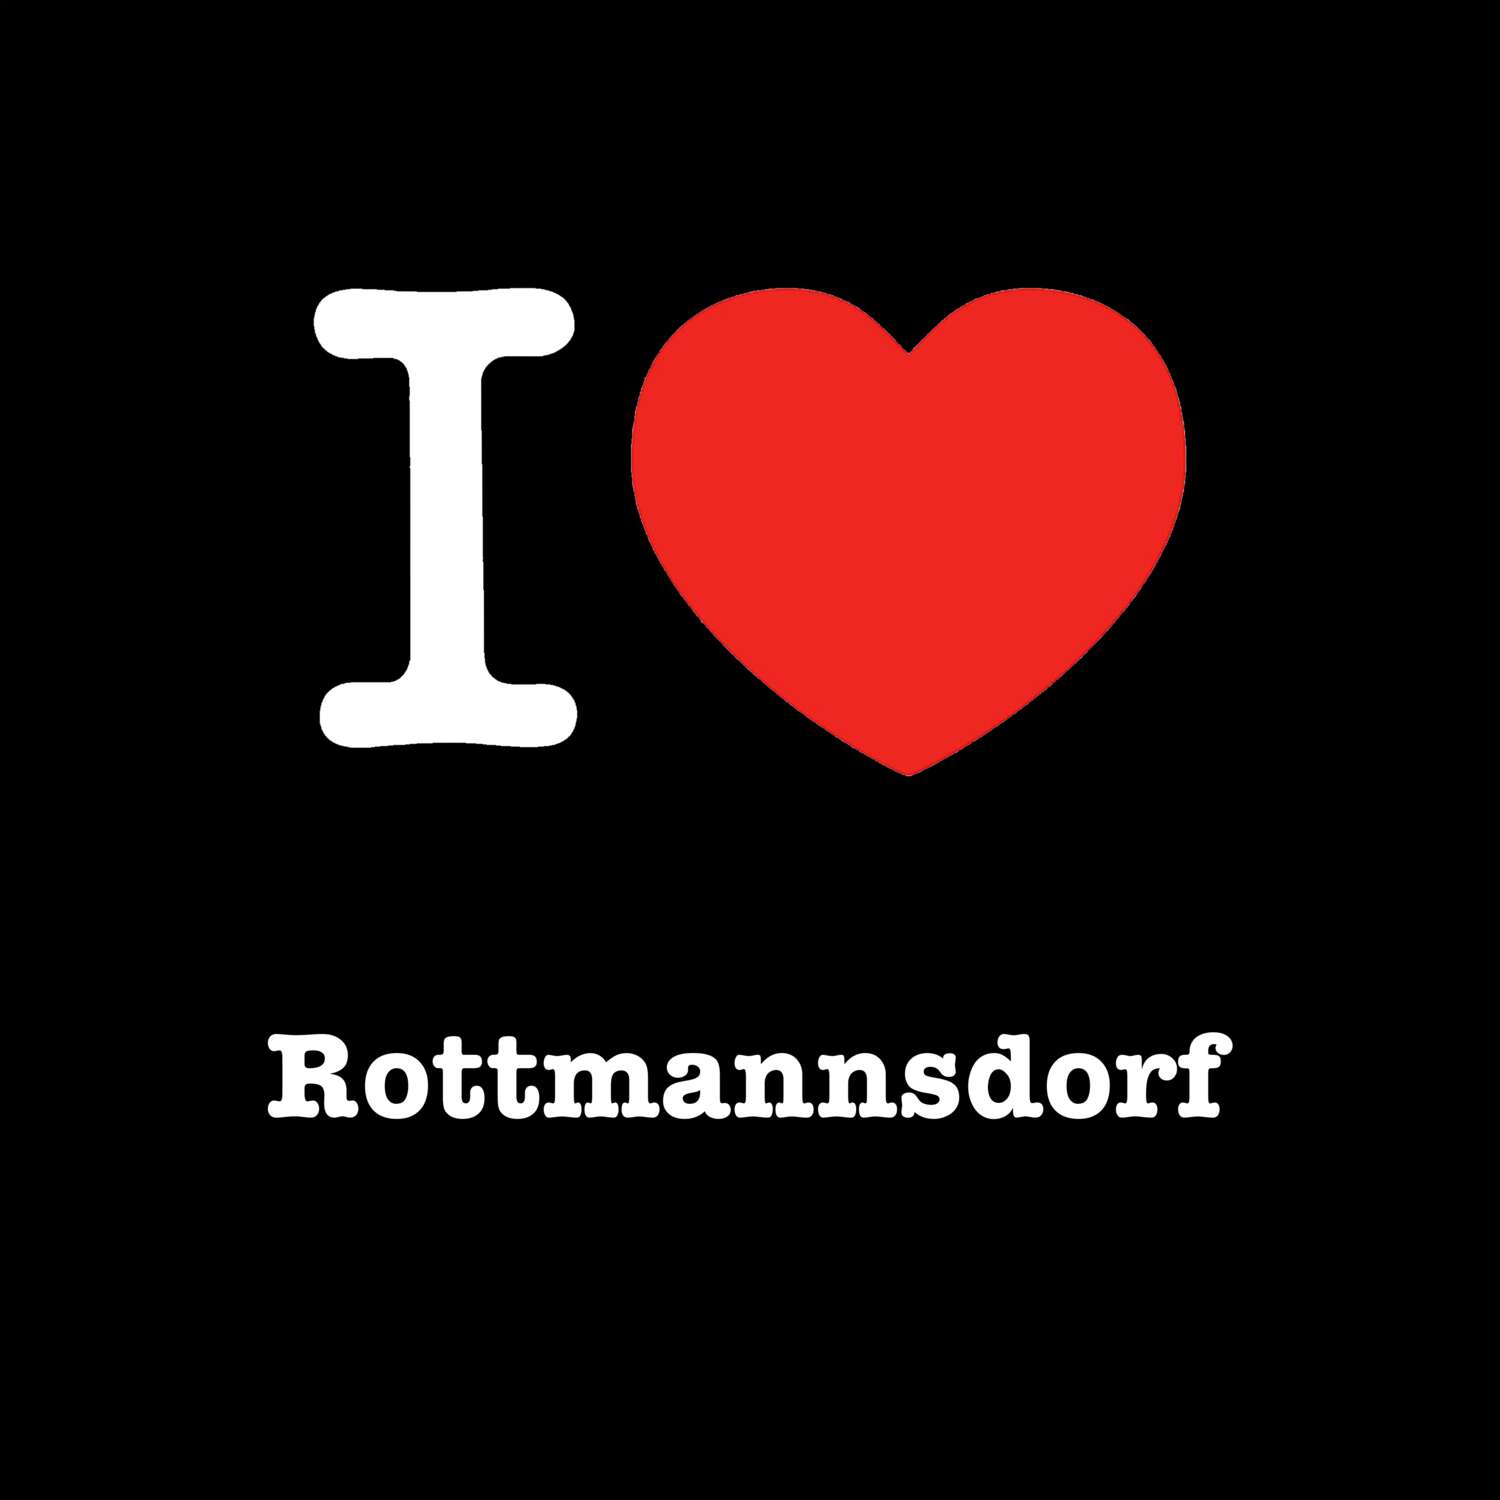 Rottmannsdorf T-Shirt »I love«